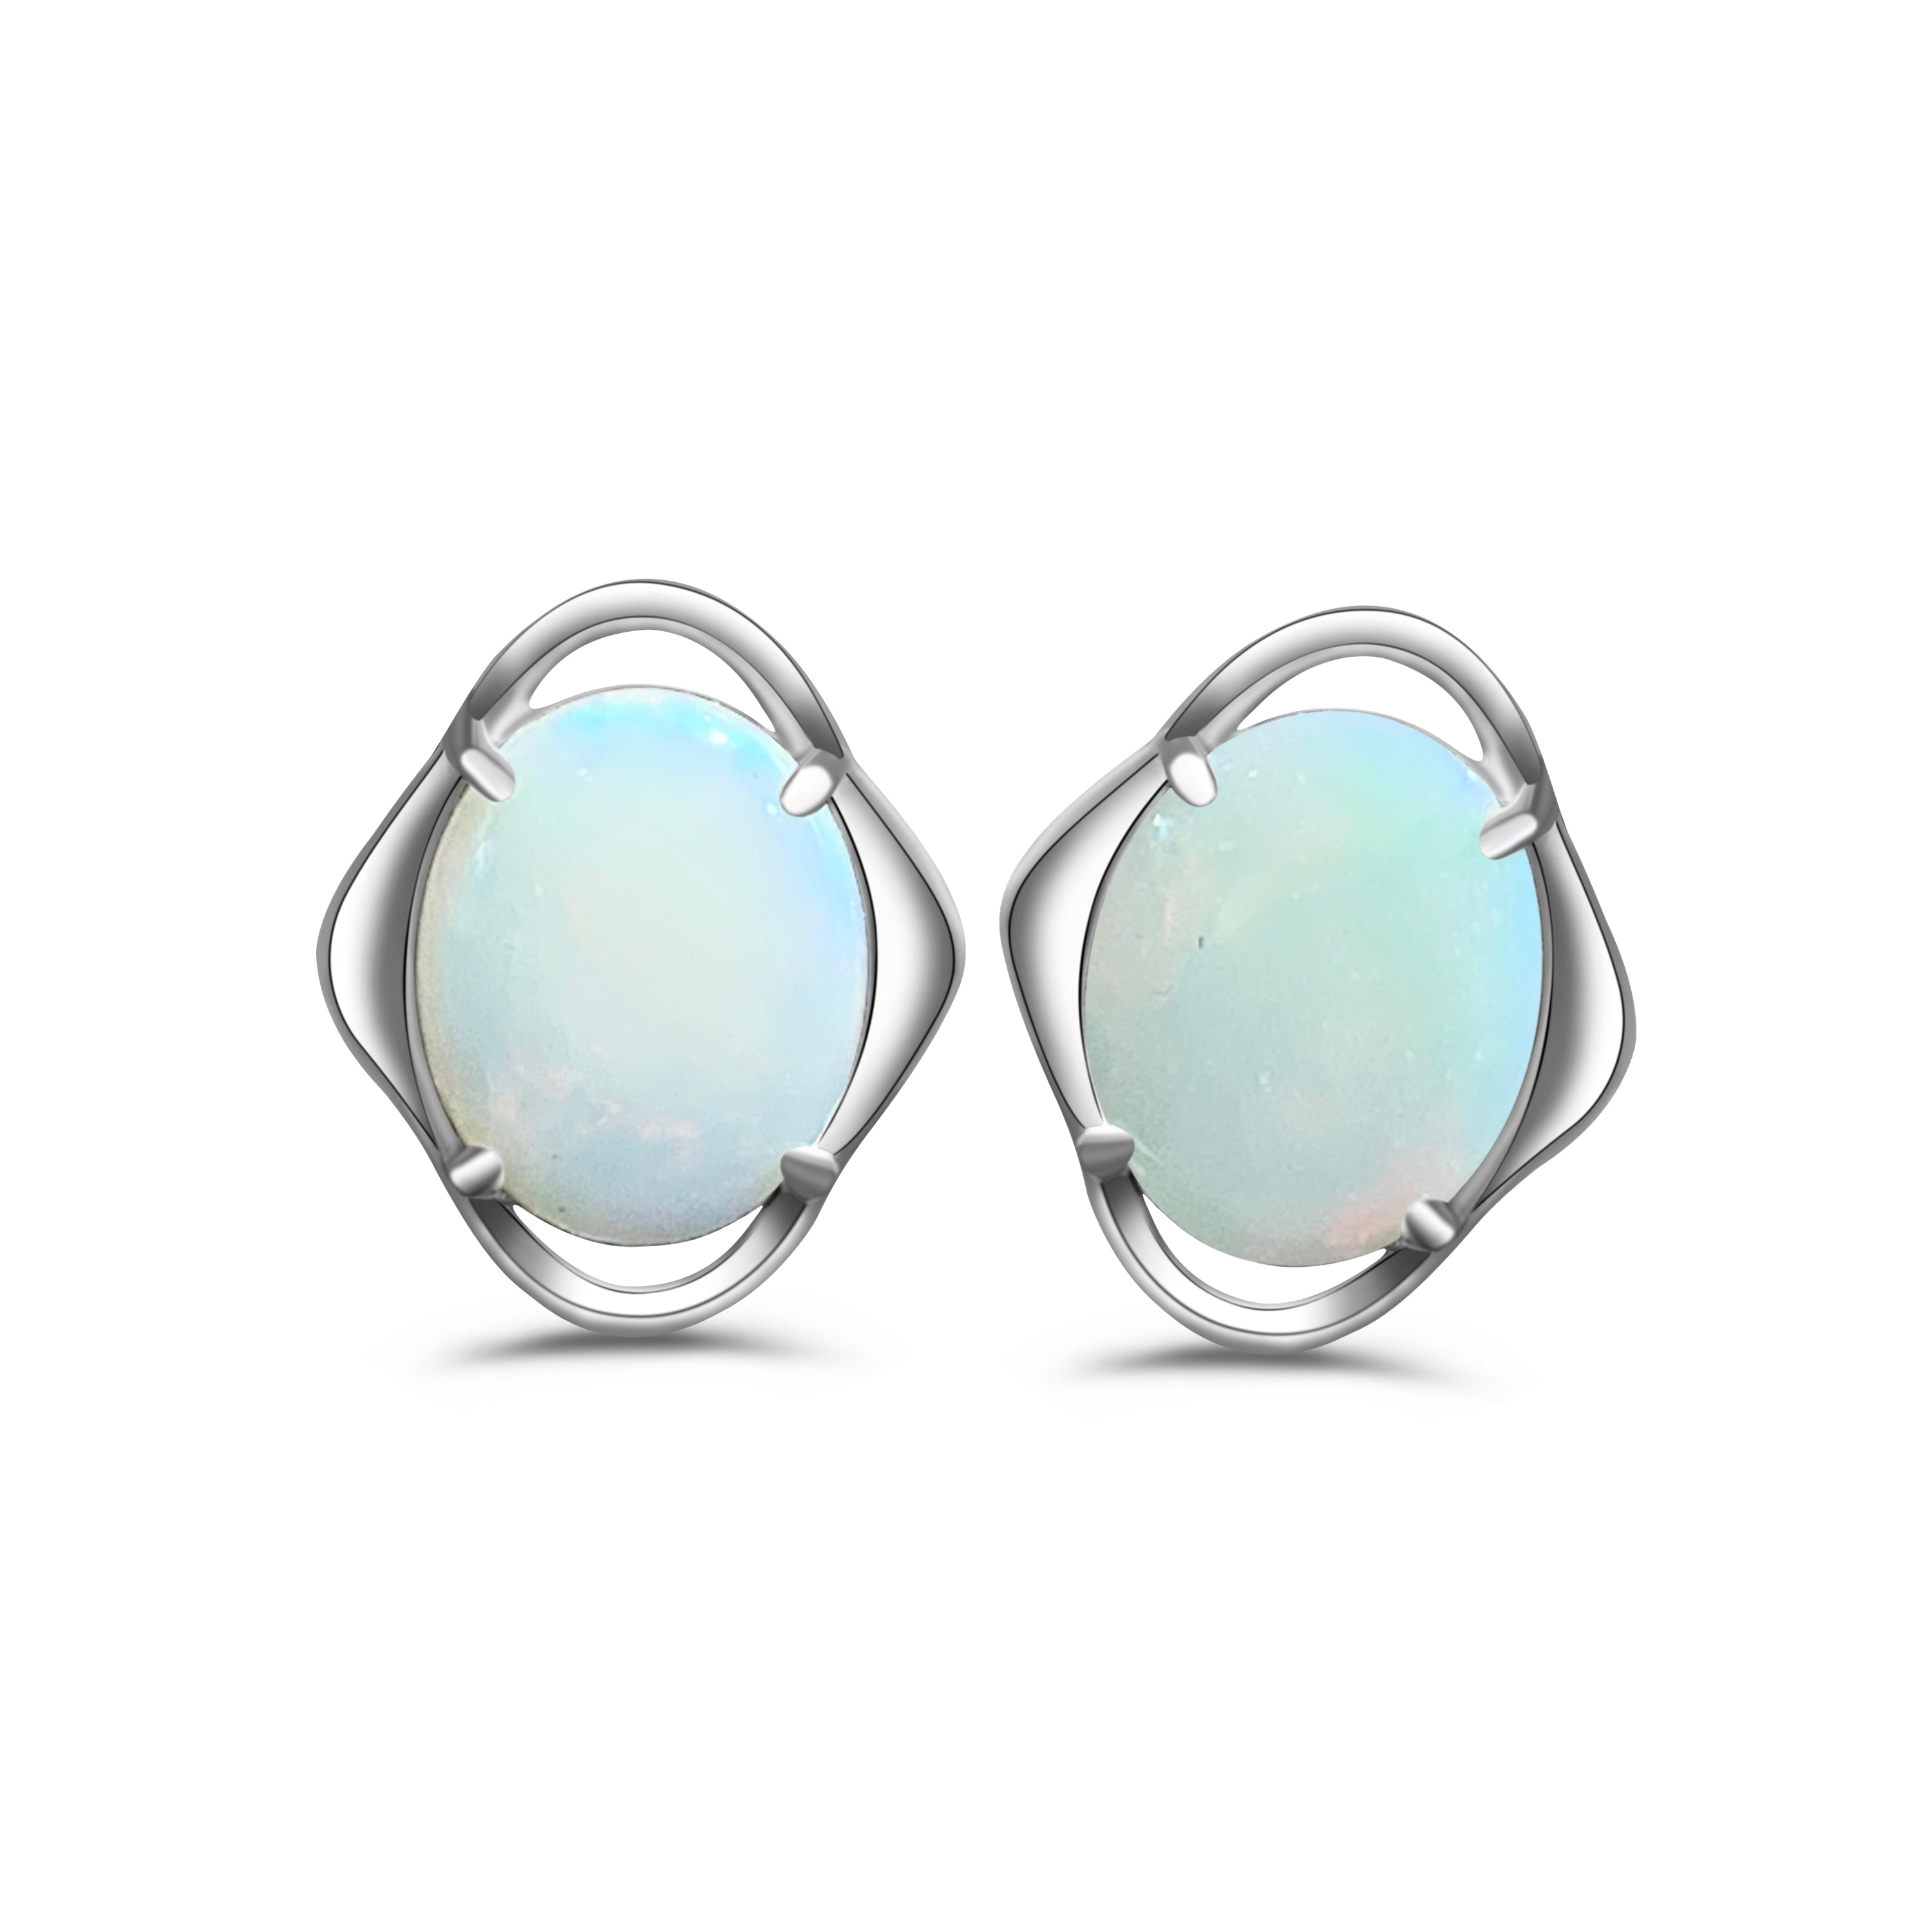 Sterling Silver 10x8mm White Opal fancy floral studs - Masterpiece Jewellery Opal & Gems Sydney Australia | Online Shop